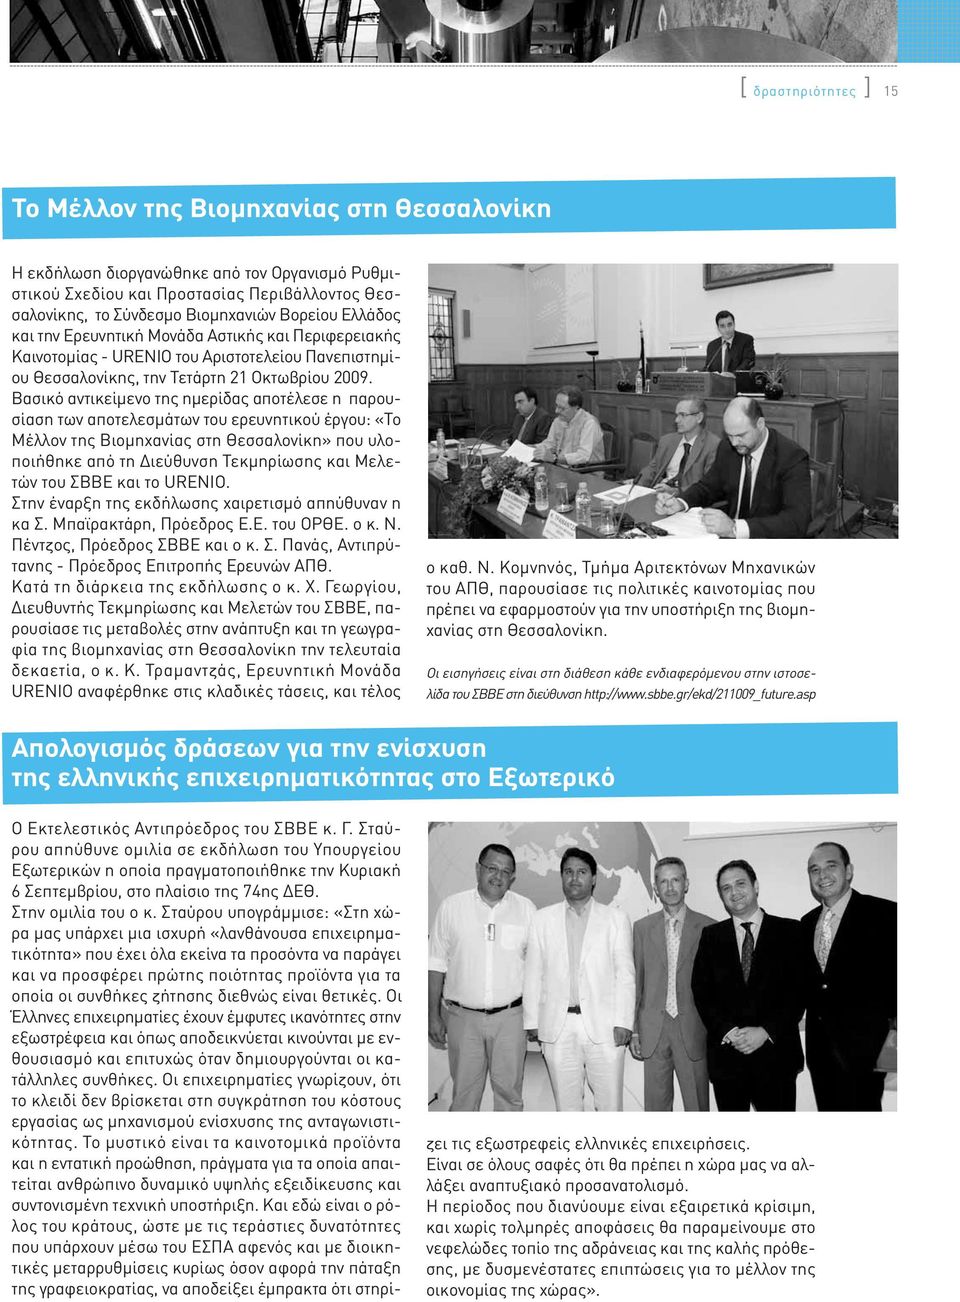 Βασικό αντικείμενο της ημερίδας αποτέλεσε η παρουσίαση των αποτελεσμάτων του ερευνητικού έργου: «Το Μέλλον της Βιομηχανίας στη Θεσσαλονίκη» που υλοποιήθηκε από τη Διεύθυνση Τεκμηρίωσης και Μελετών